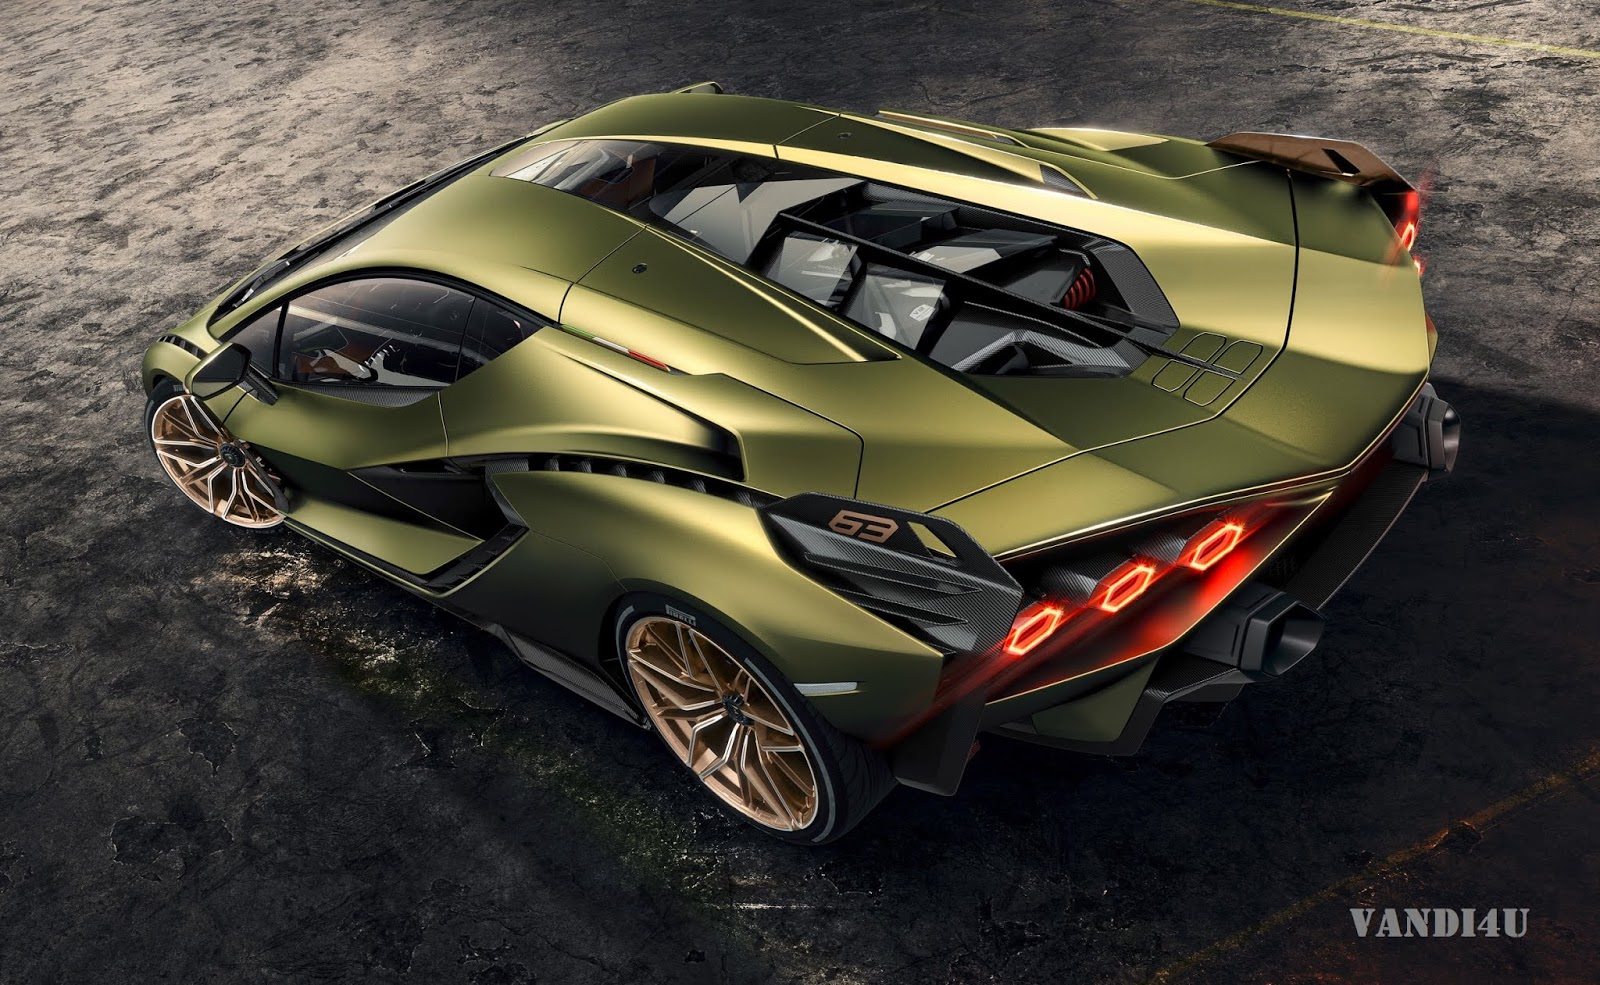 Lamborghini Unviels It's First Hybrid Supercar - Sian |VANDI4U